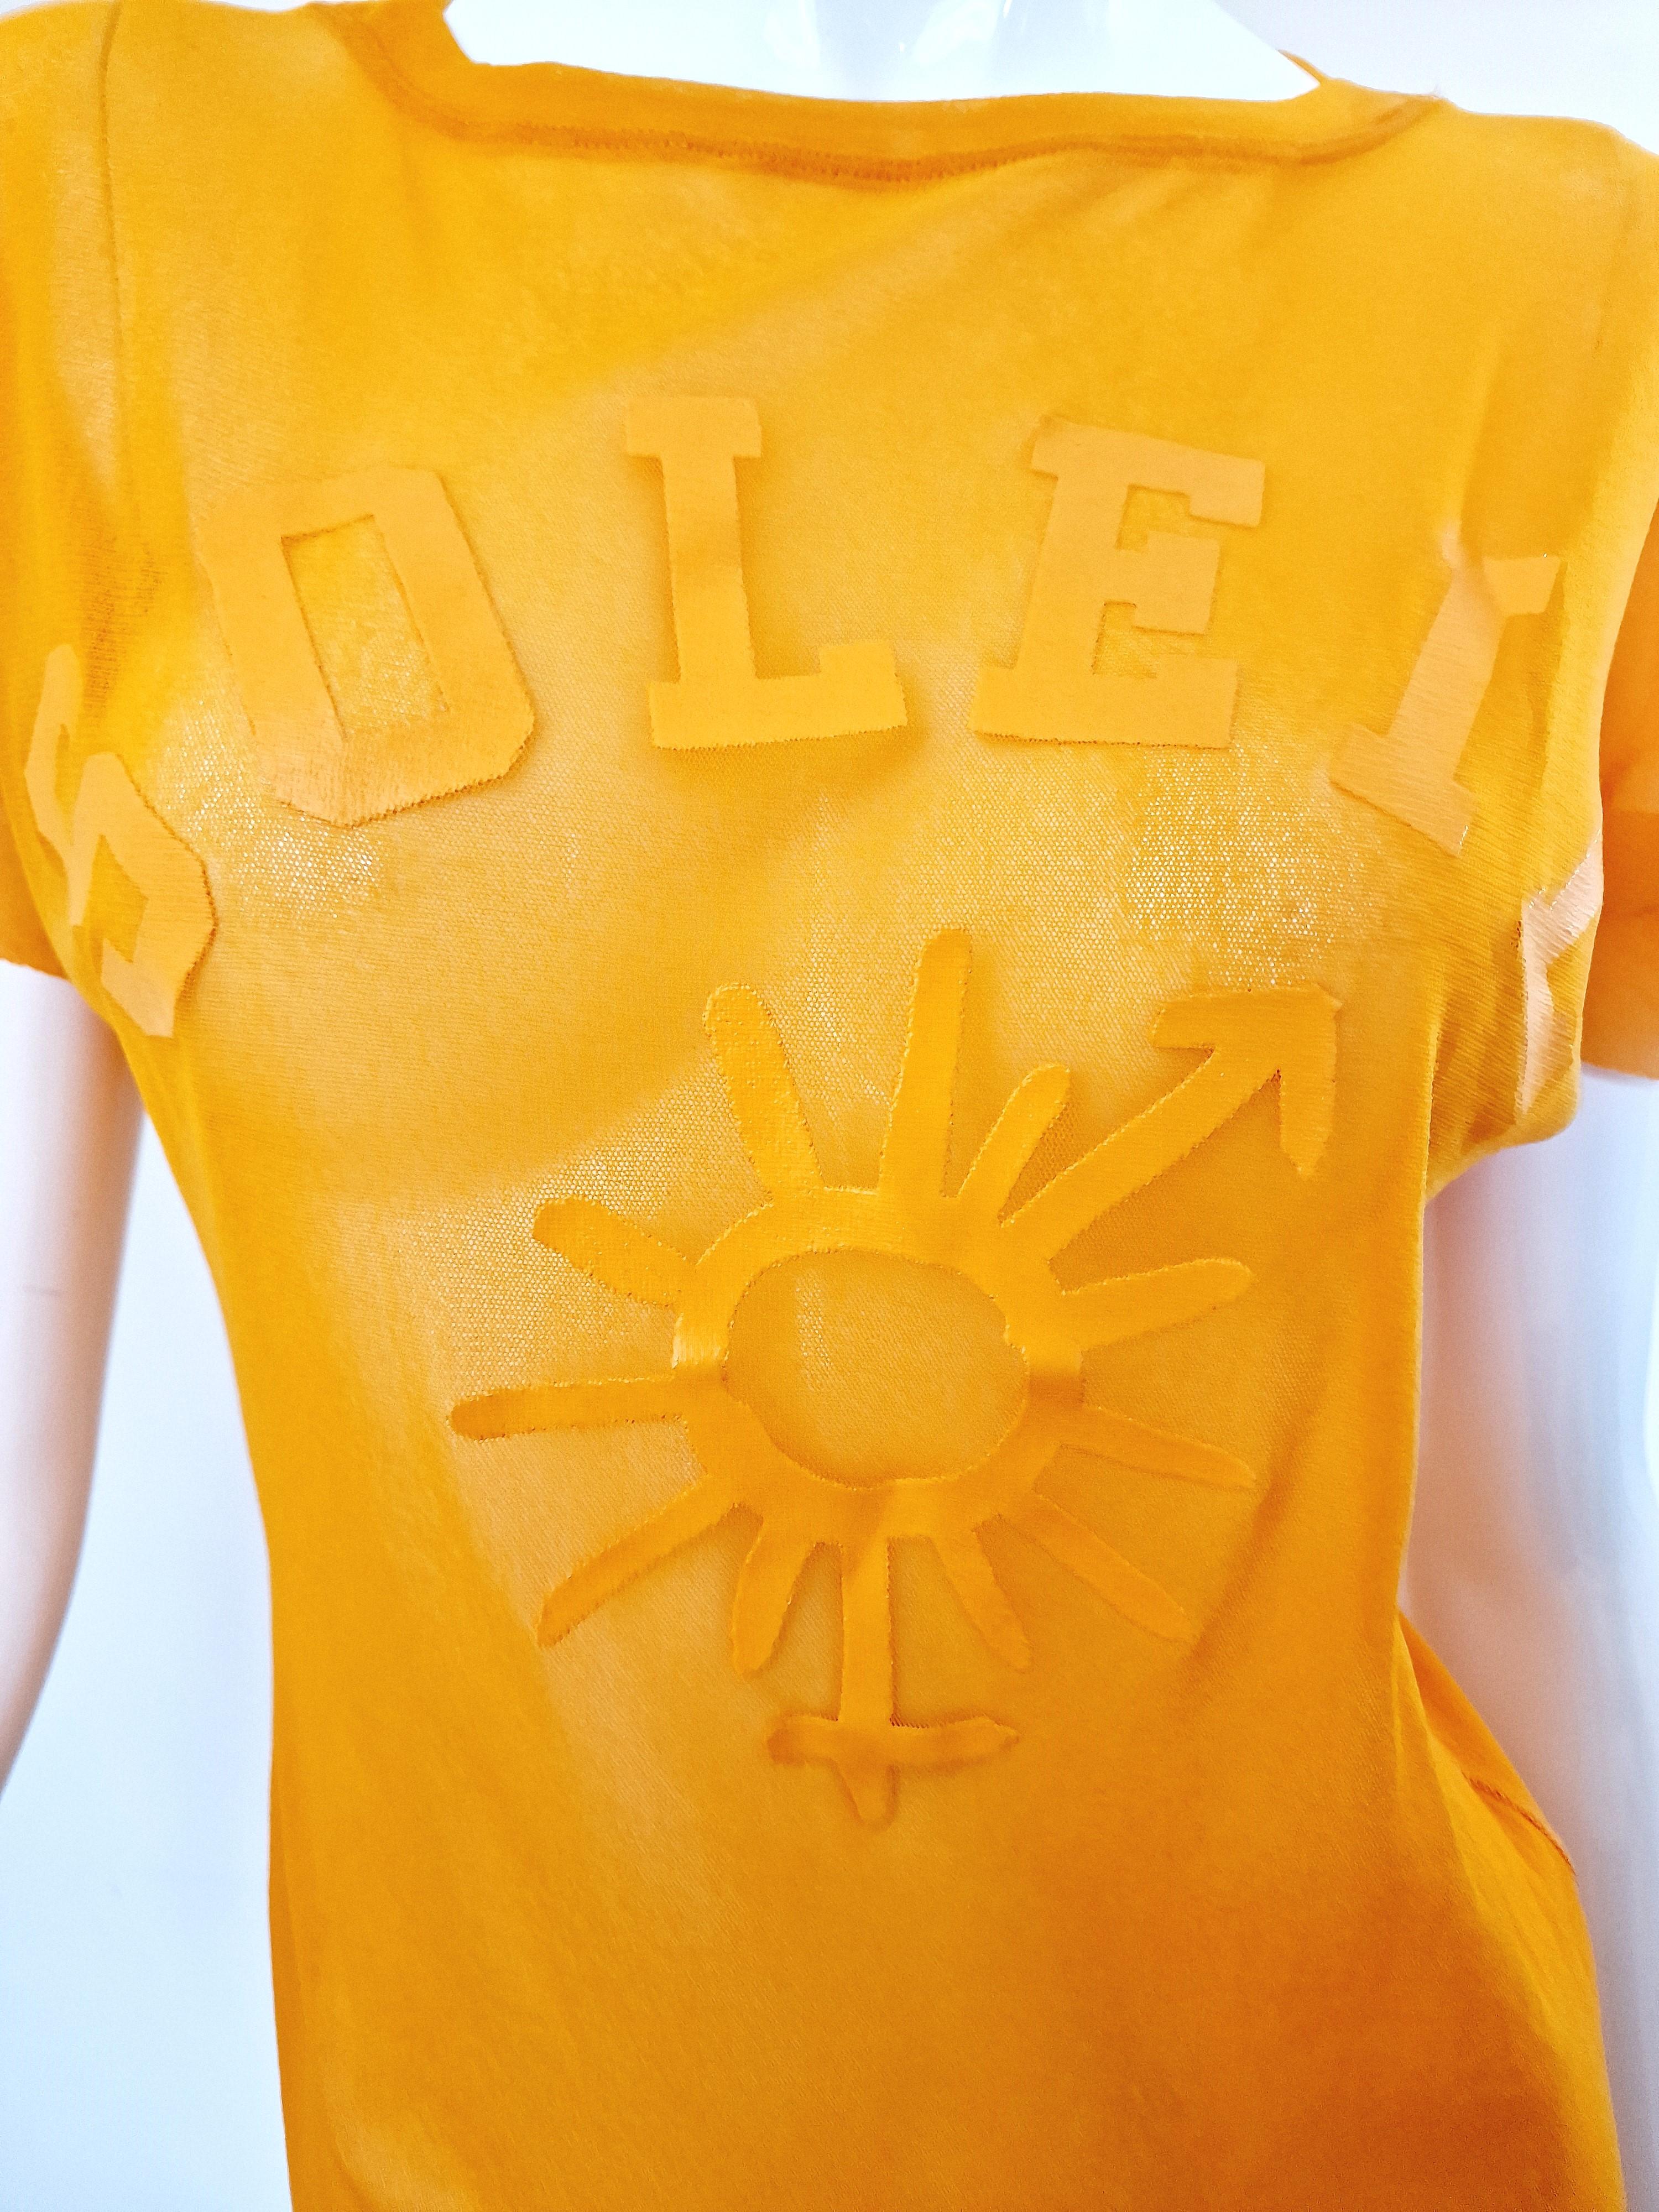 Jean Paul Gaultier Sex Sybmol Soleil Orange Logo Text Men Shirt Large XL Top For Sale 1